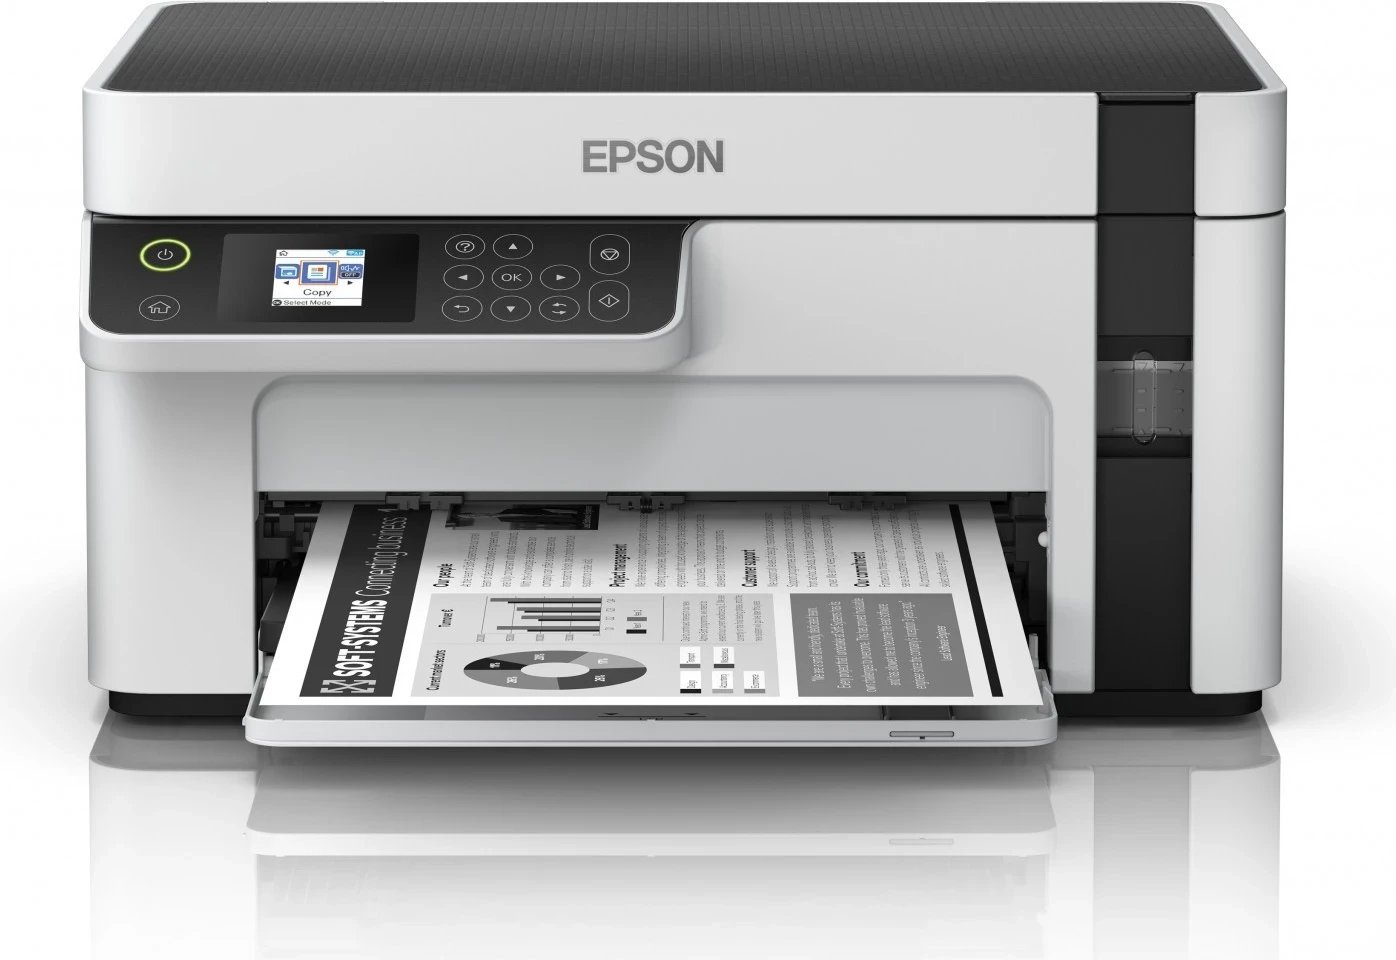 Printer Epson M2120, i bardhë